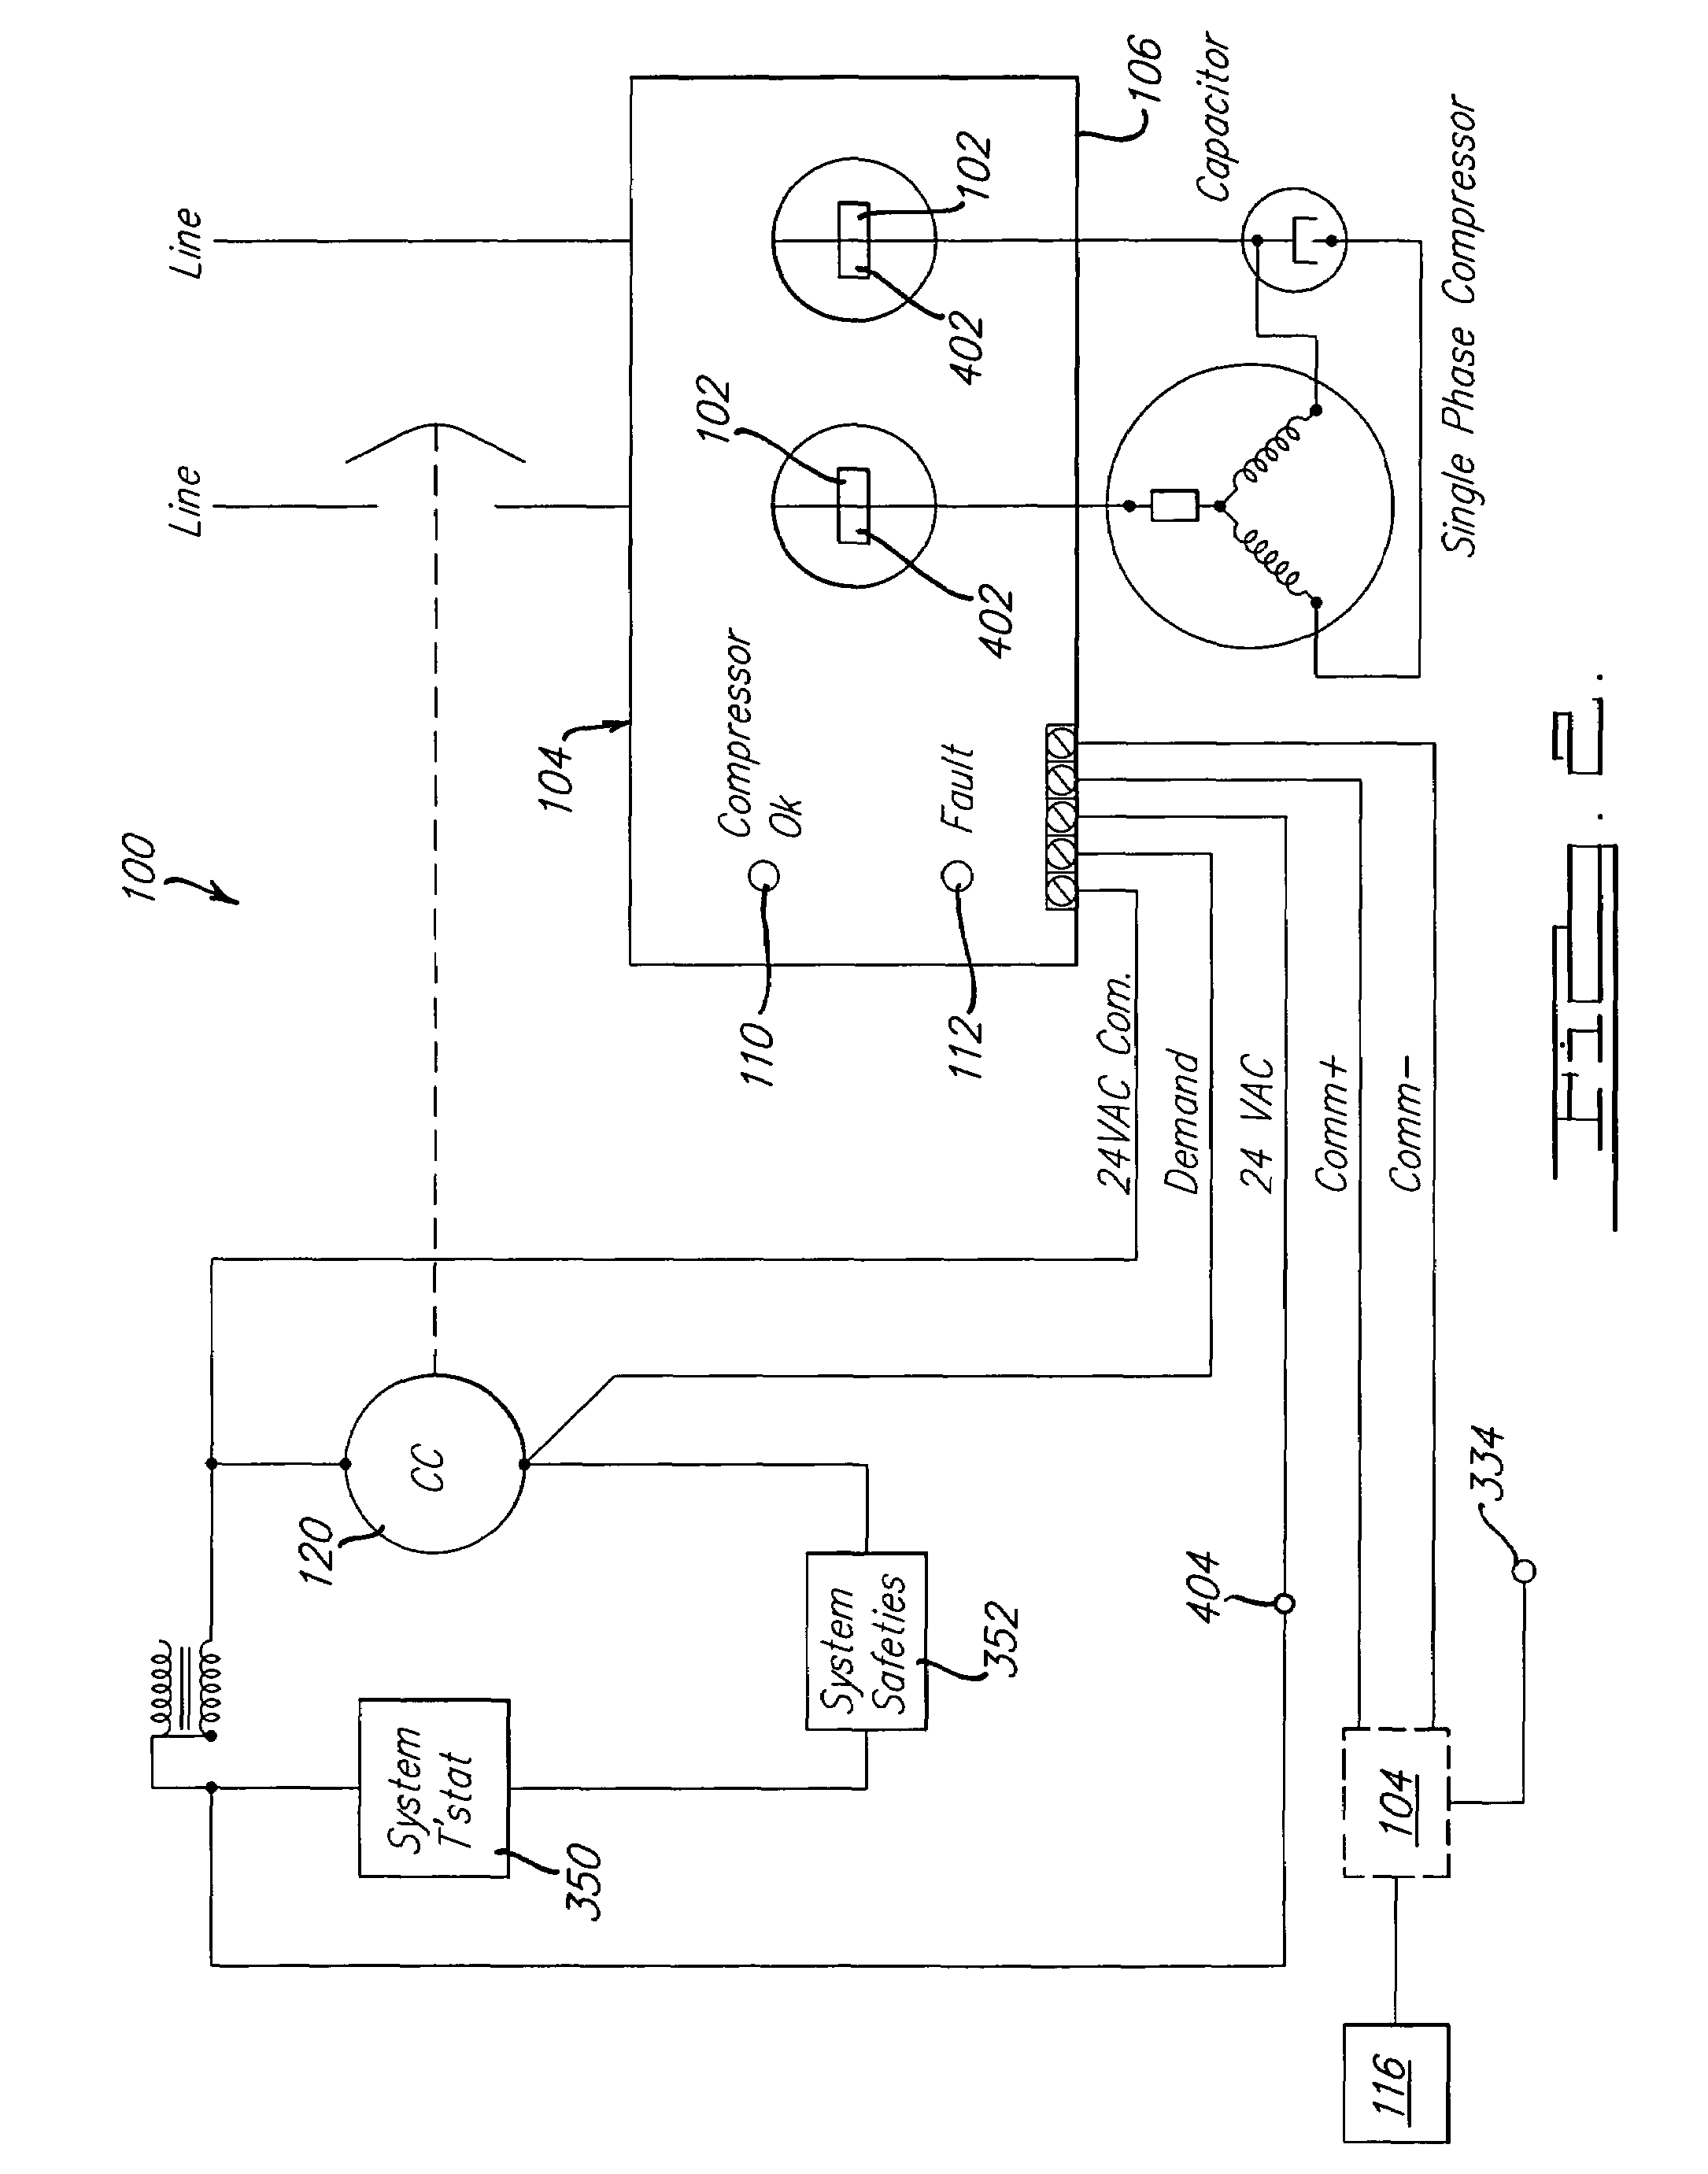 Single Phase Compressor Wiring Schematics - Wiring Diagrams Hubs - Air Compressor Wiring Diagram 230V 1 Phase